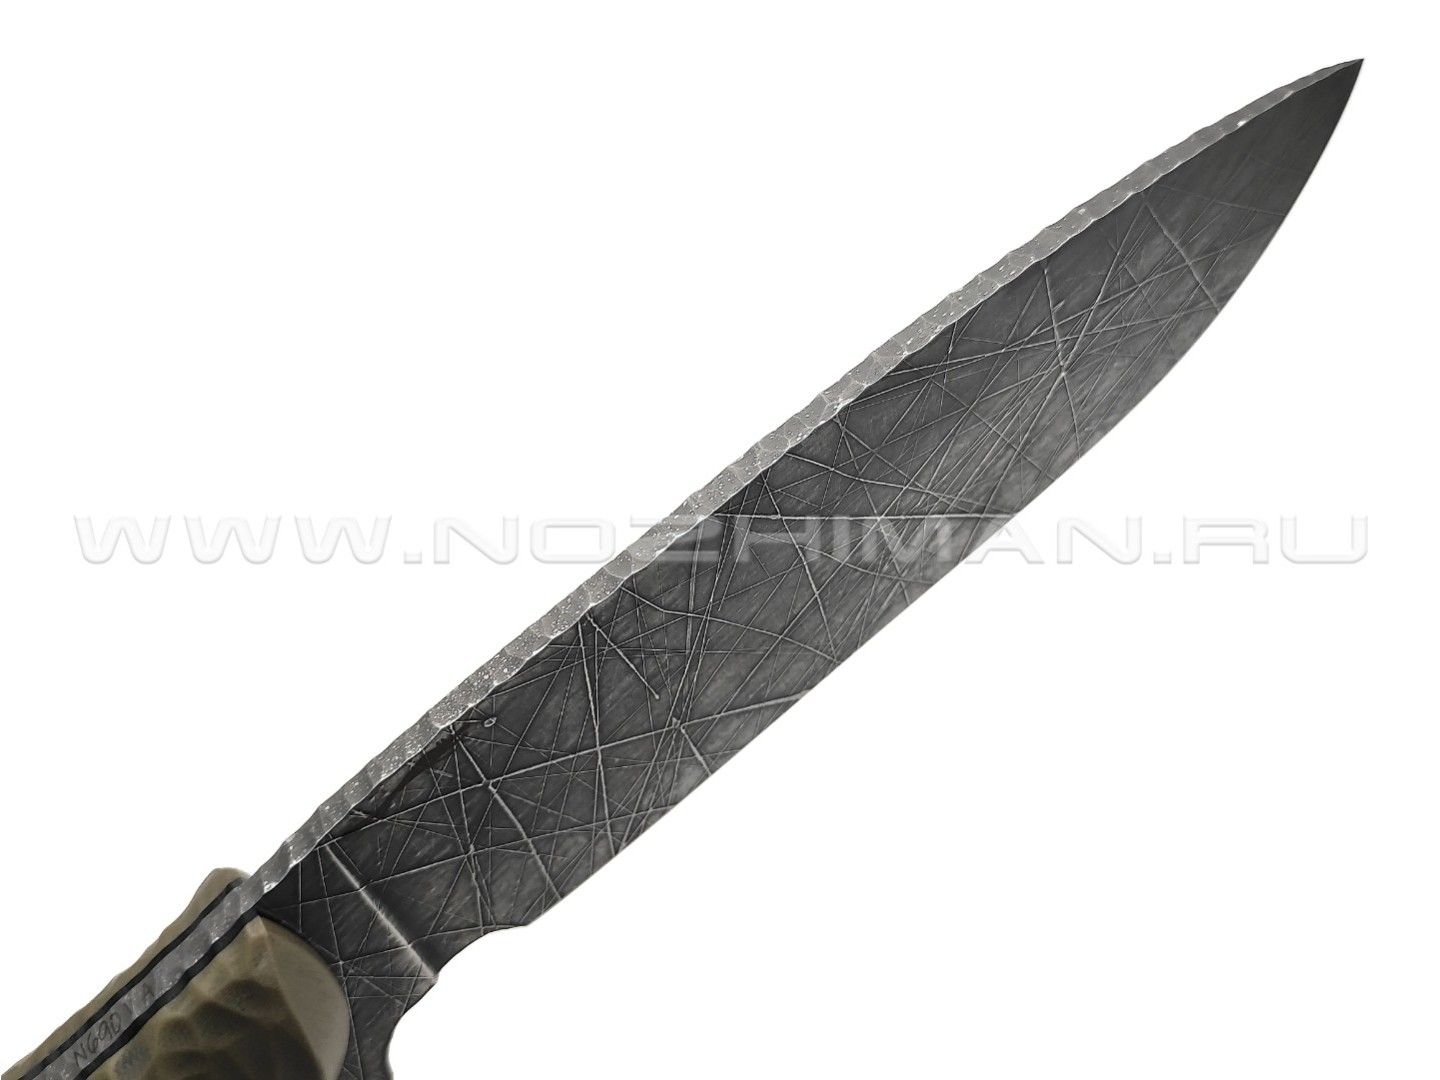 Волчий Век нож Команданте Custom сталь N690 WA хаотик, рукоять G10 black & tan, пины карбон